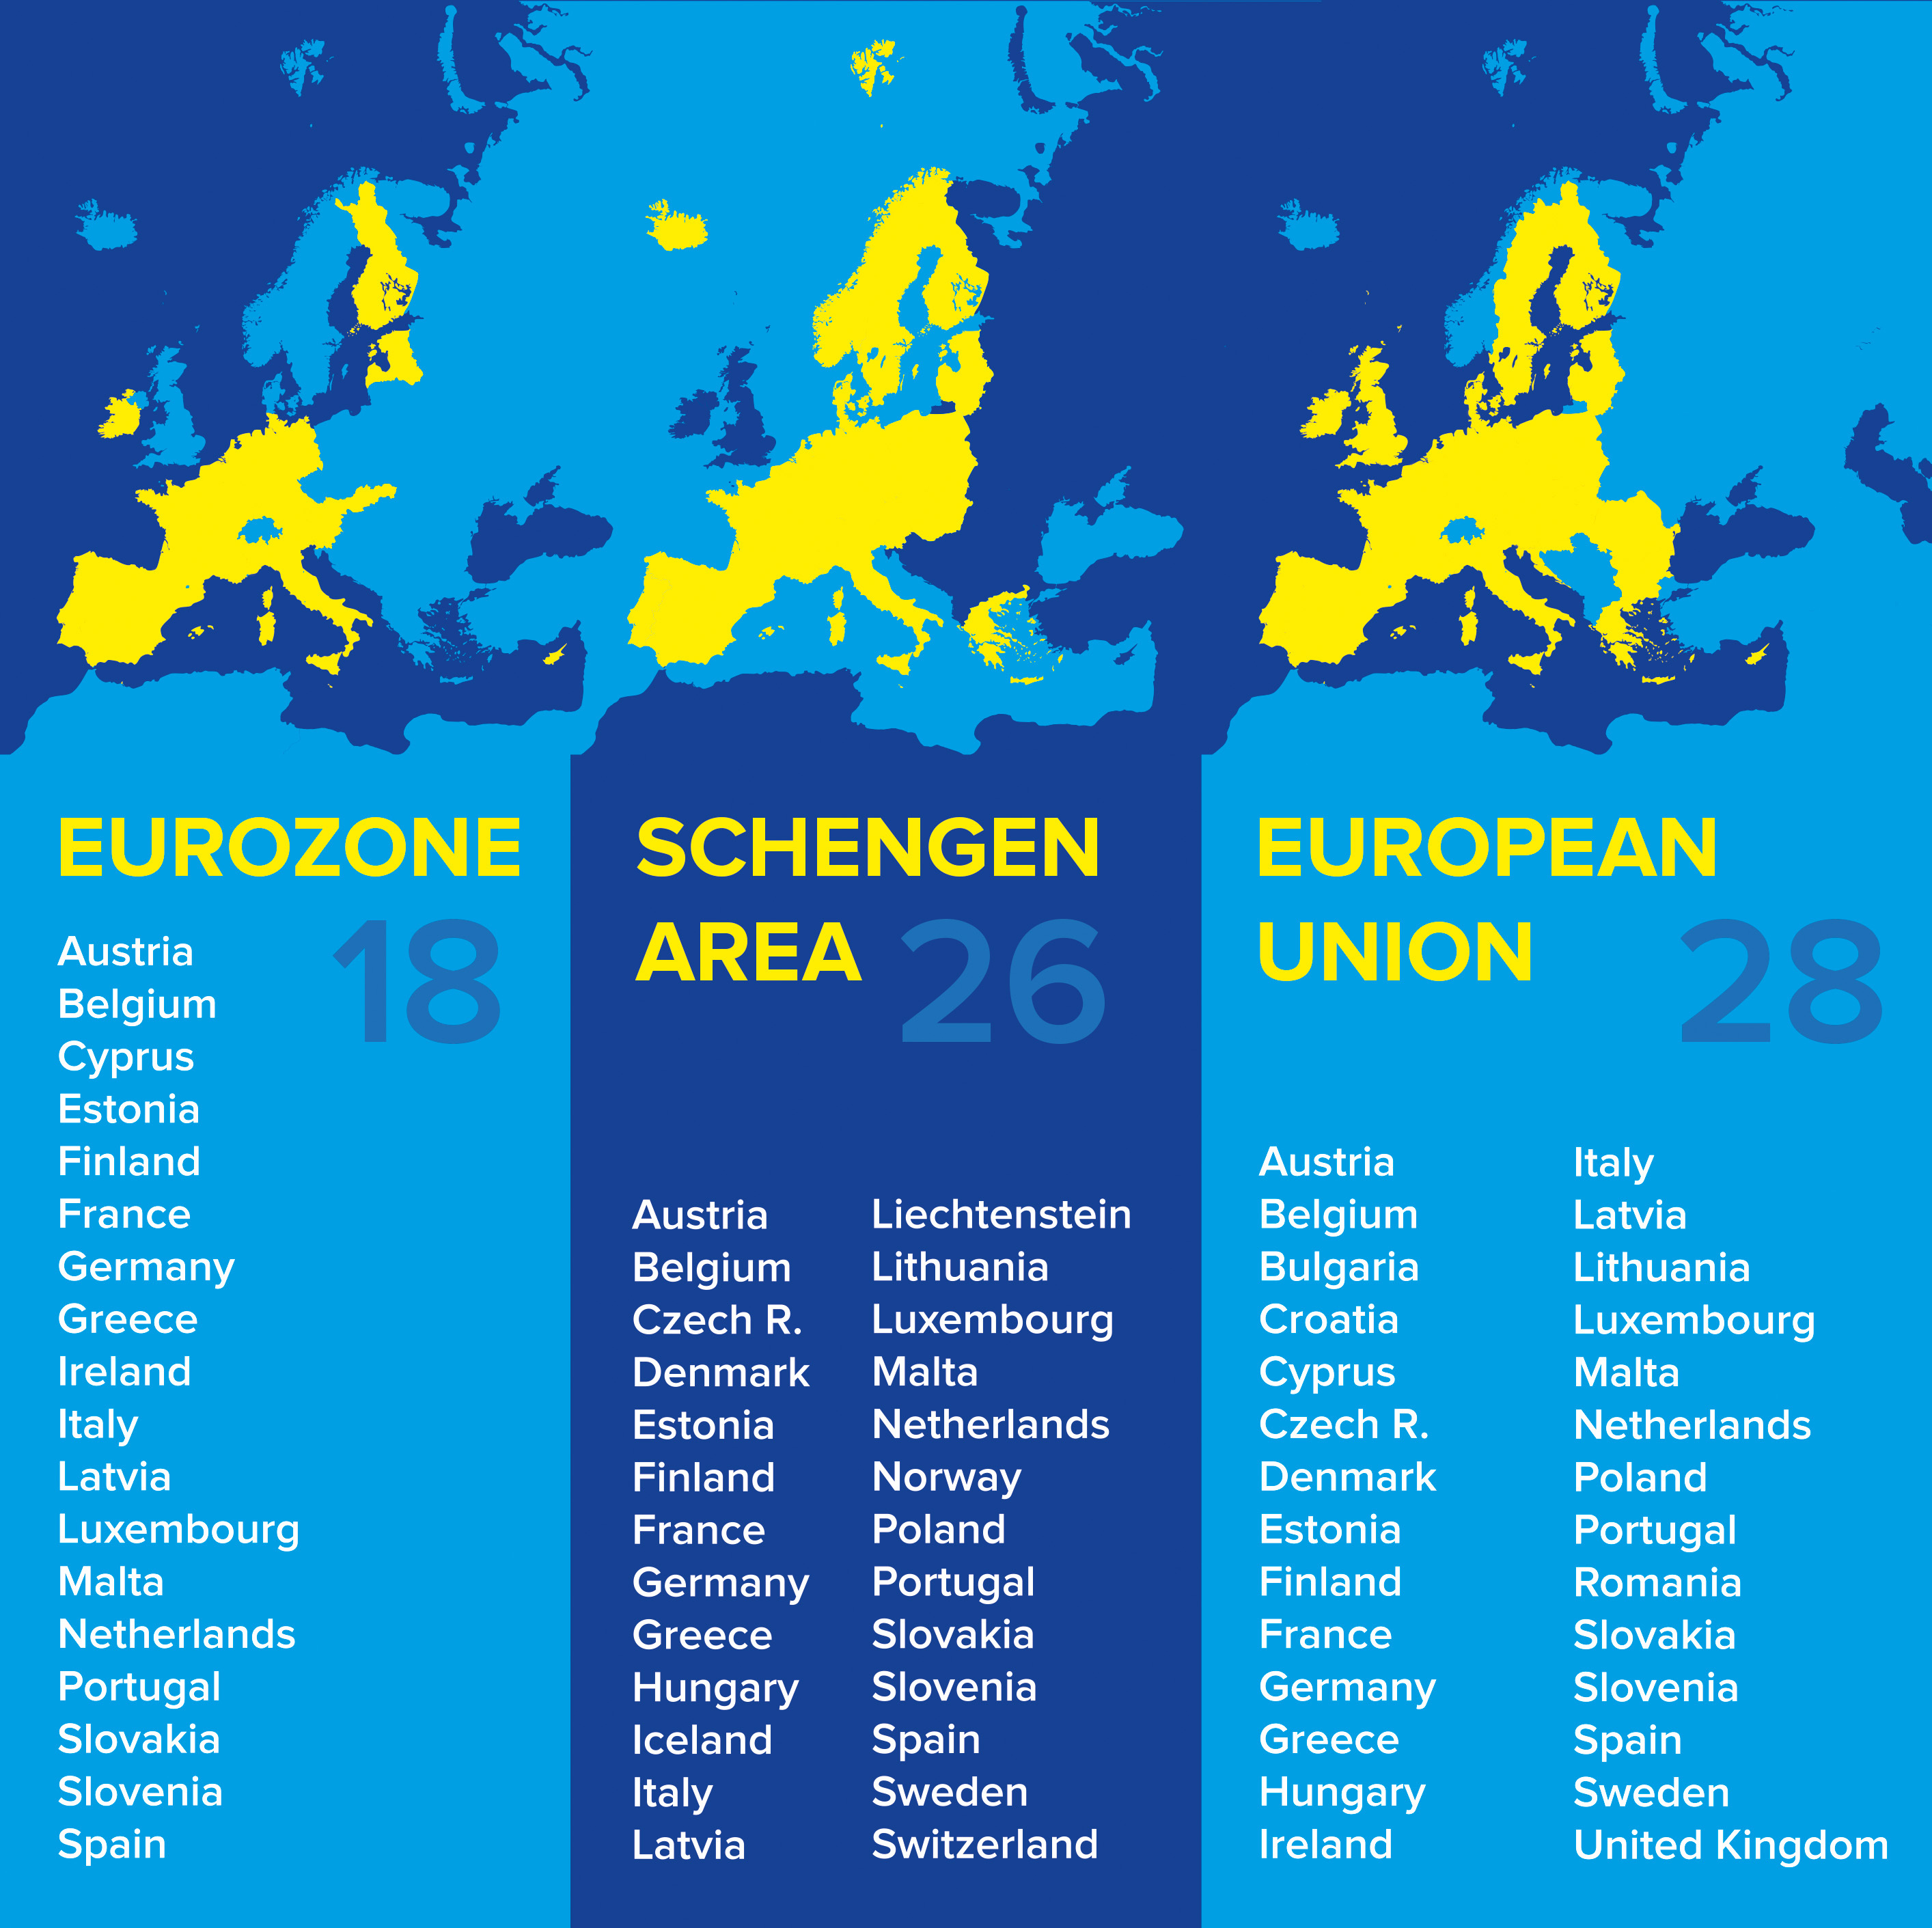 schengen zone travel rules